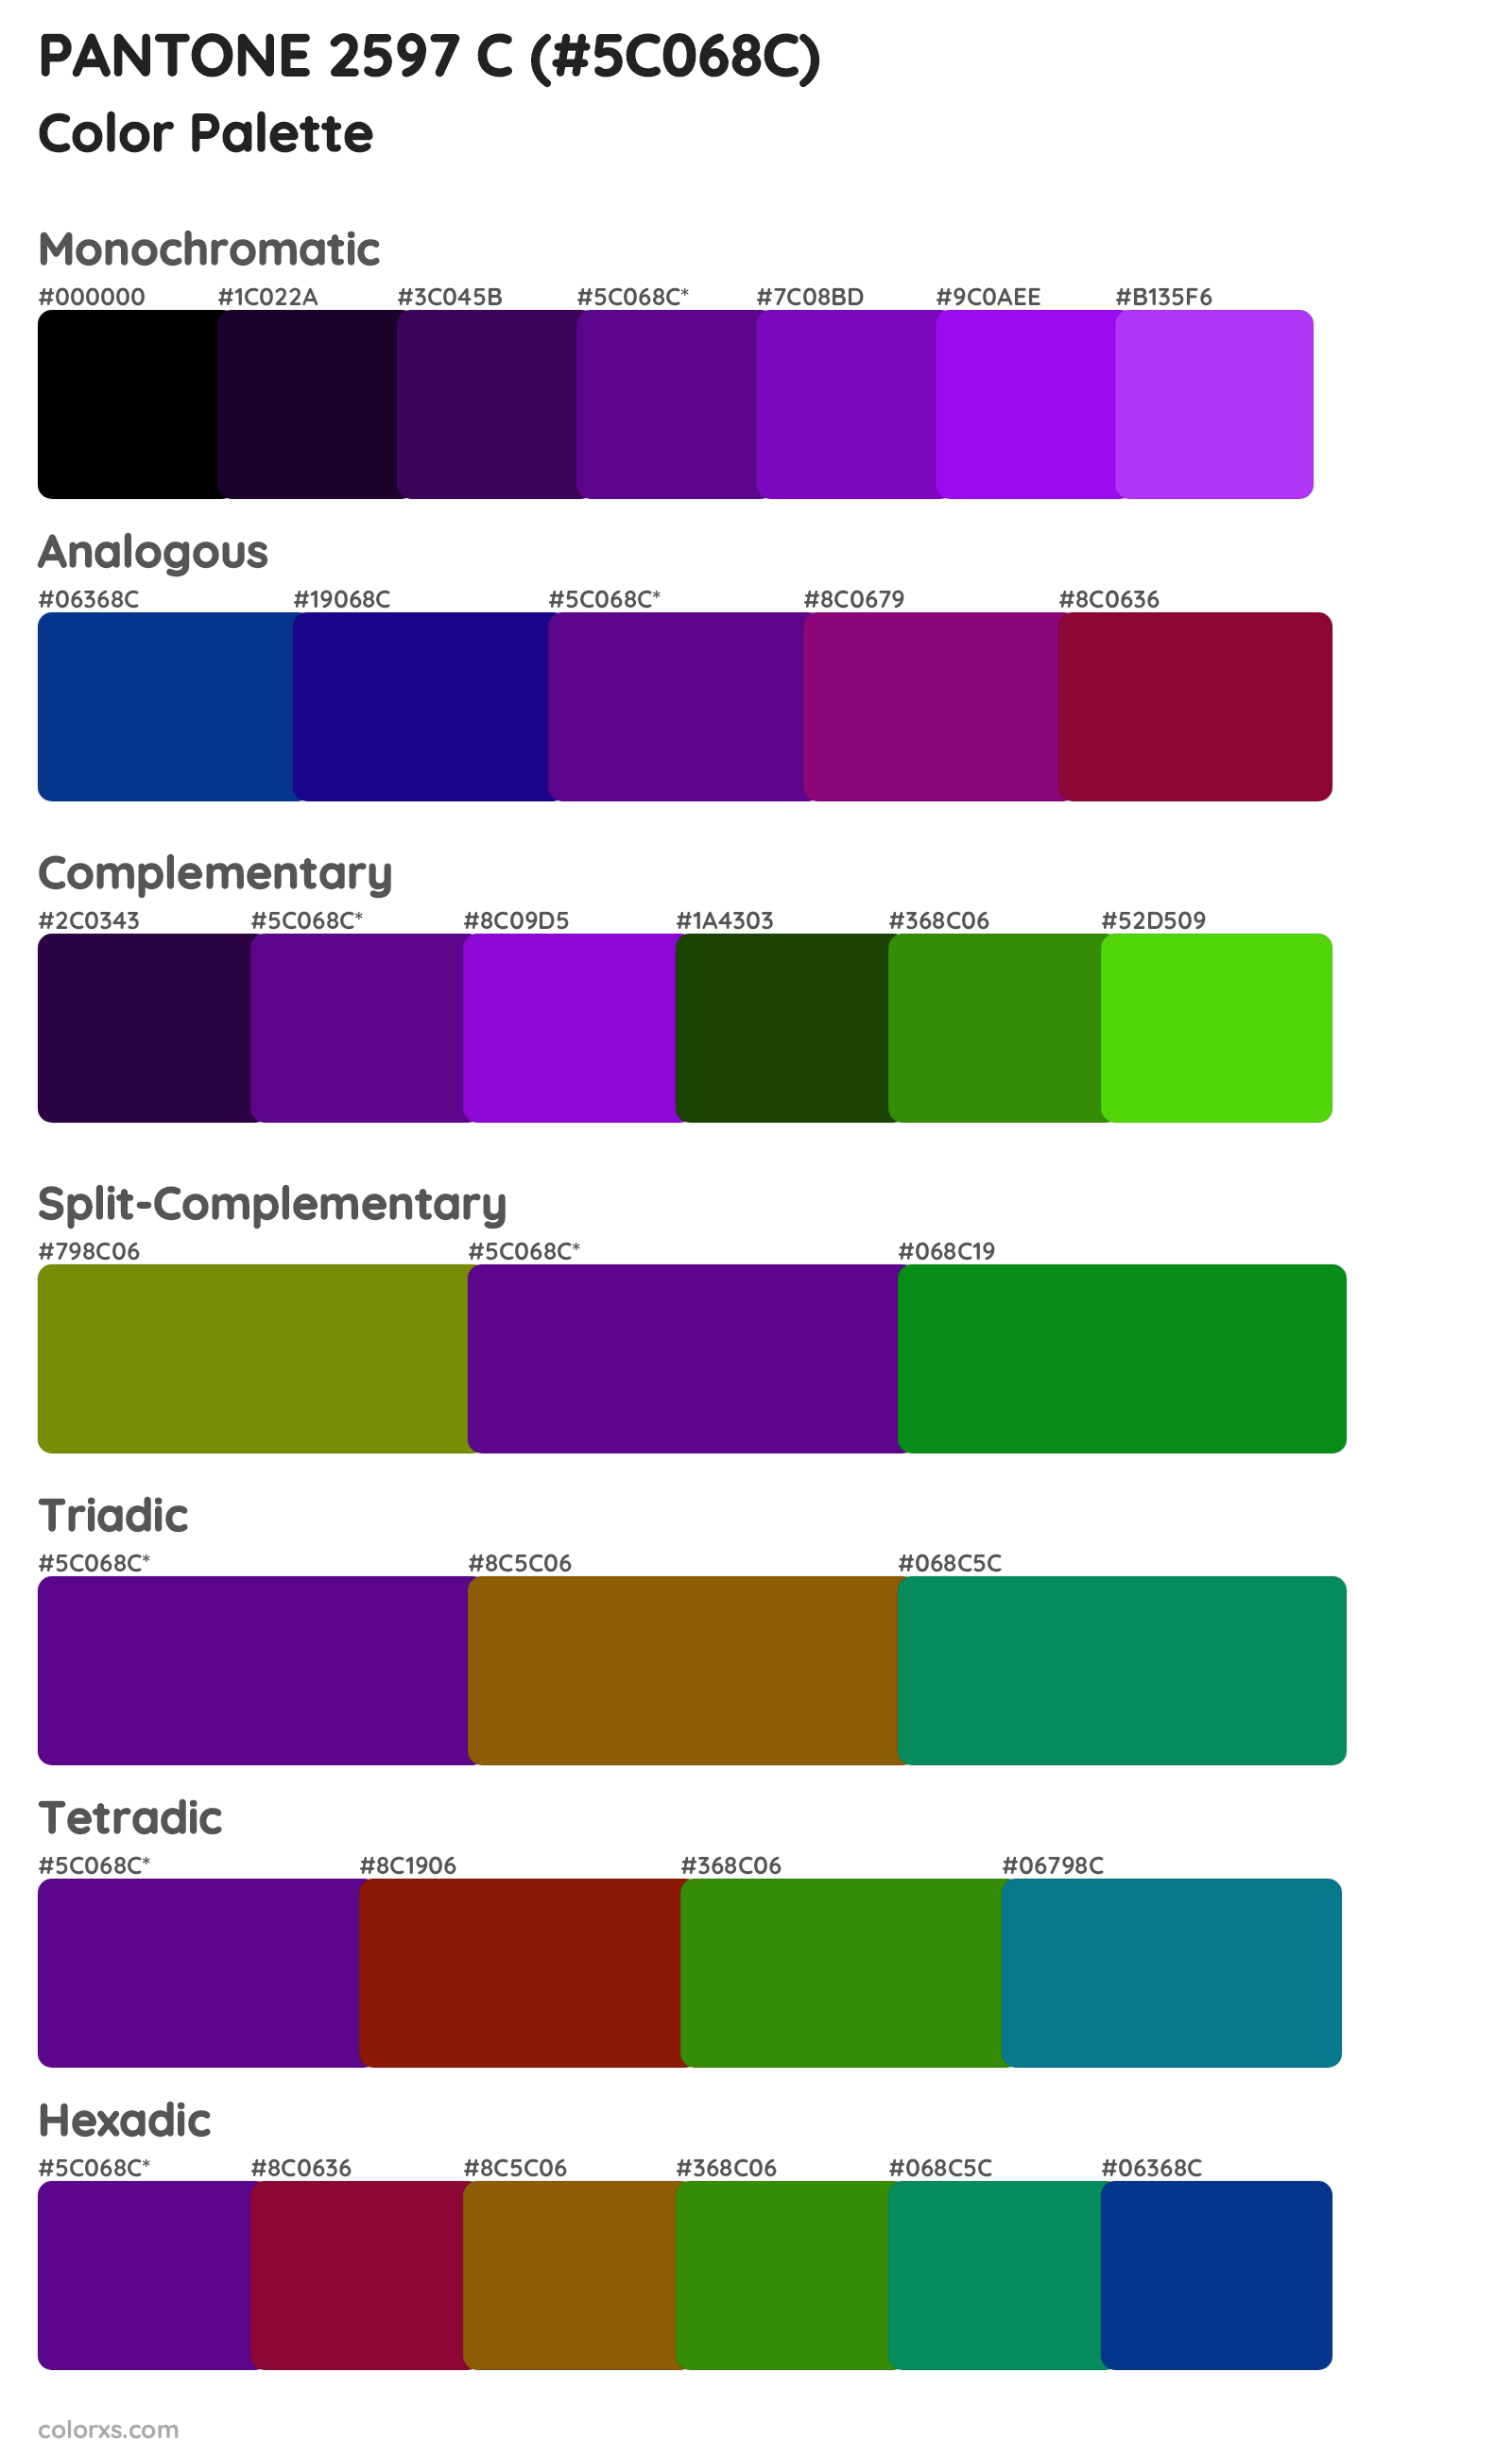 PANTONE 2597 C Color Scheme Palettes